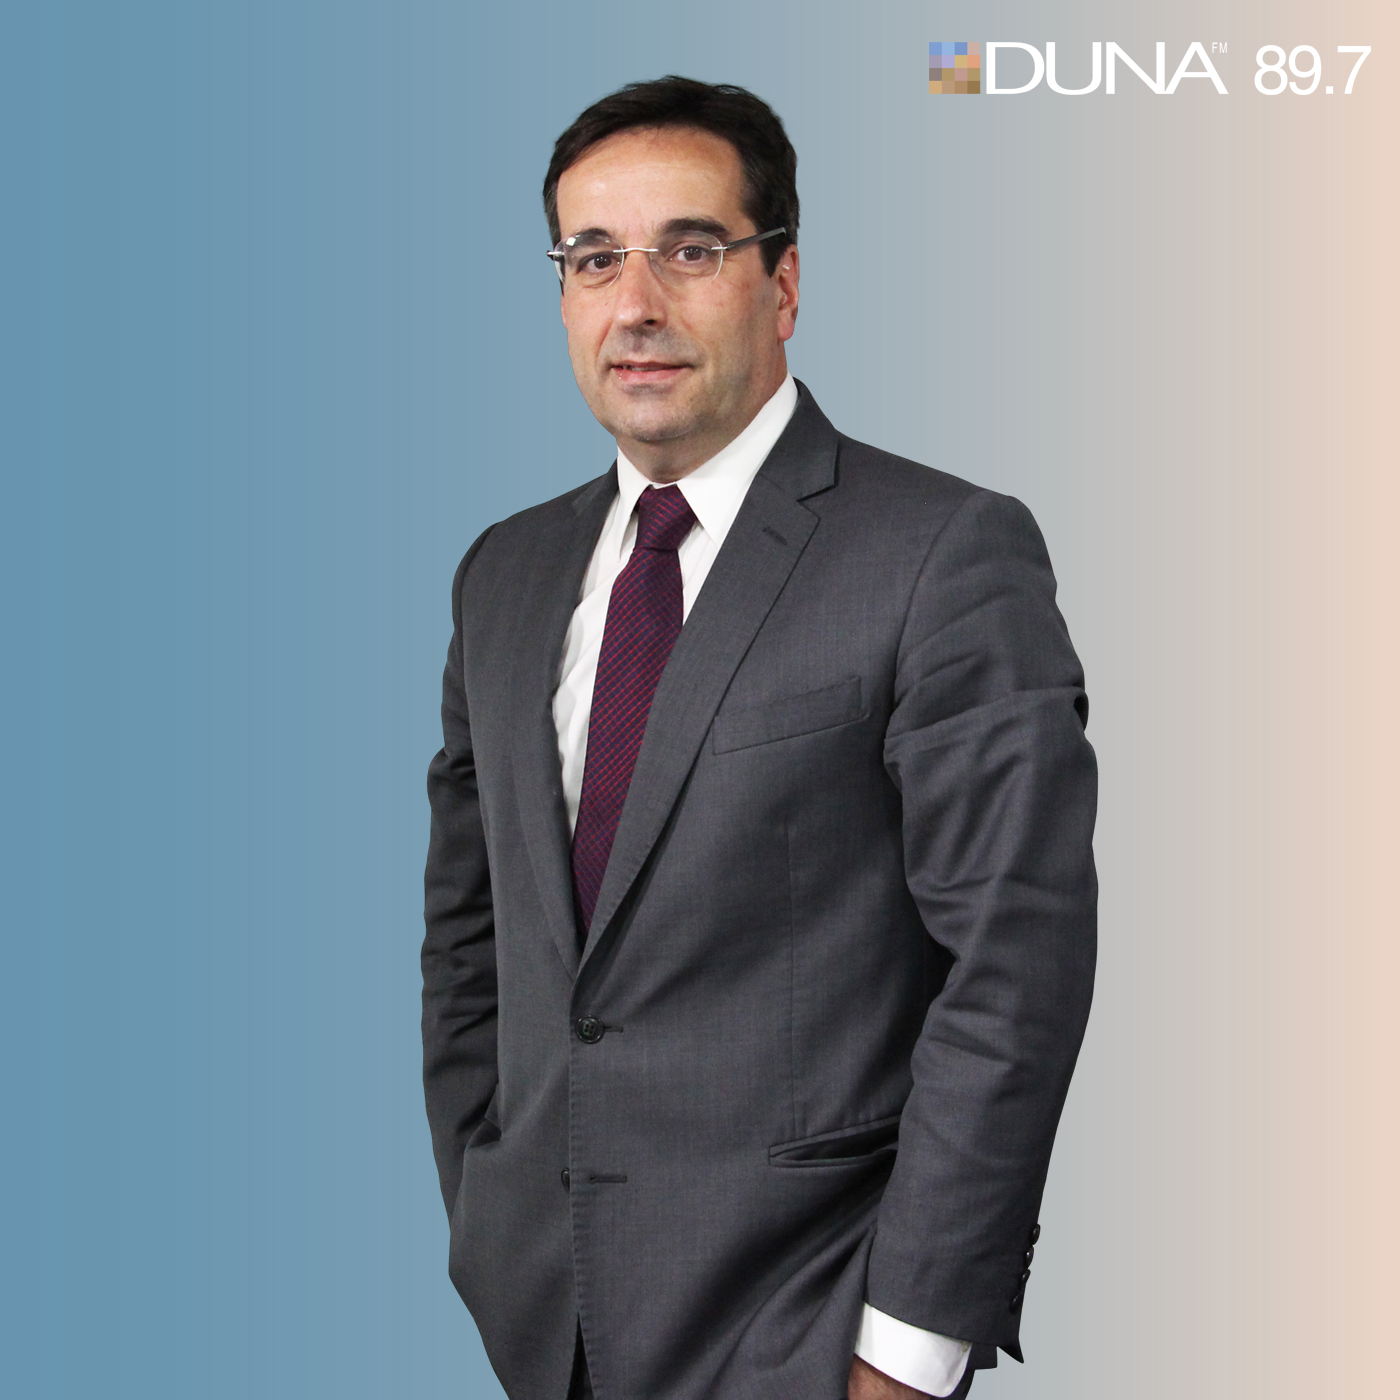 Radio Duna | Enfoque Duna